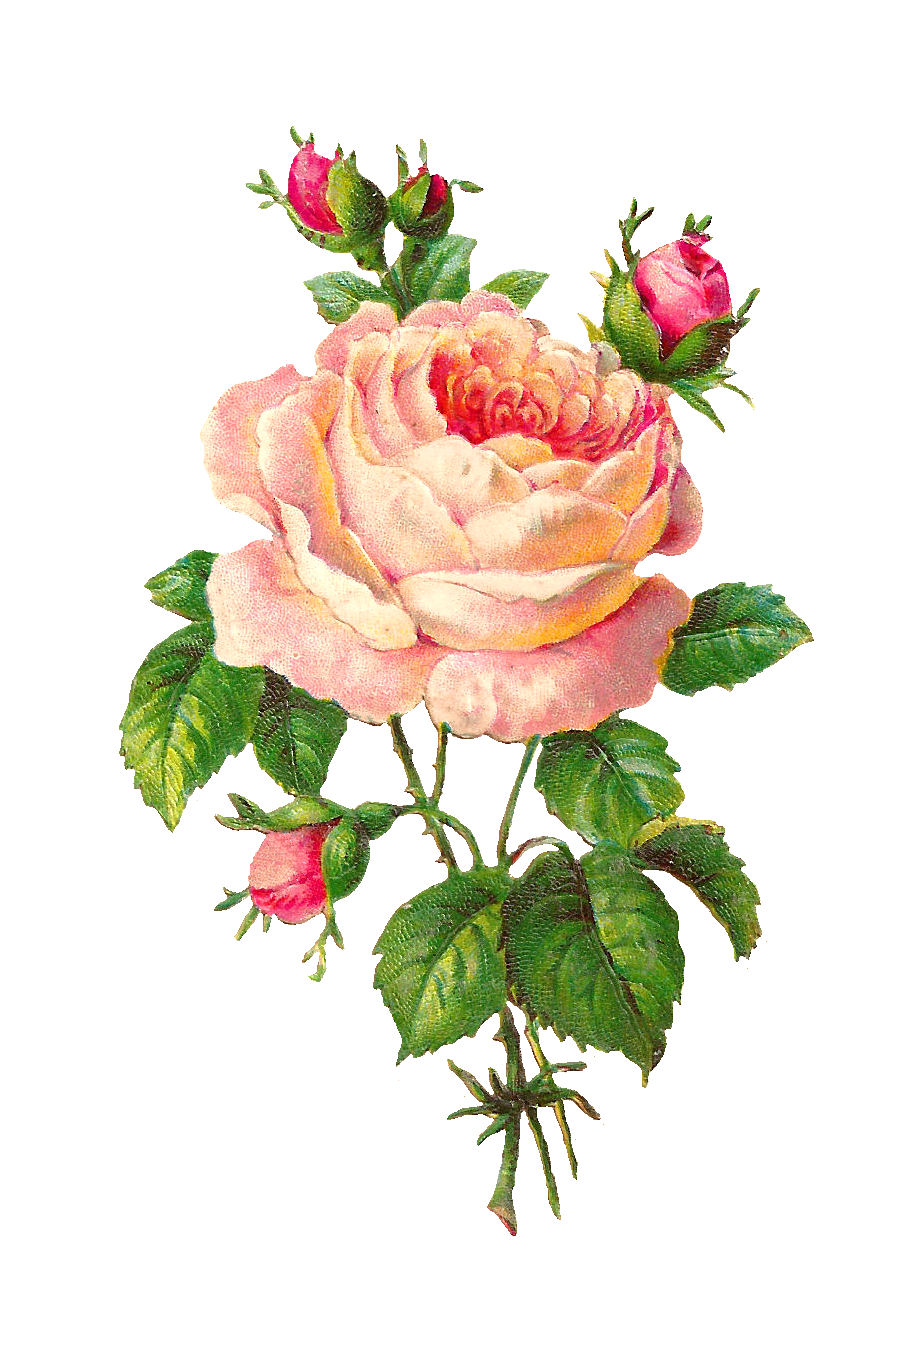 Antique Images: Flower Scrapbooking Pink Rose with Buds Vintage Digital ...